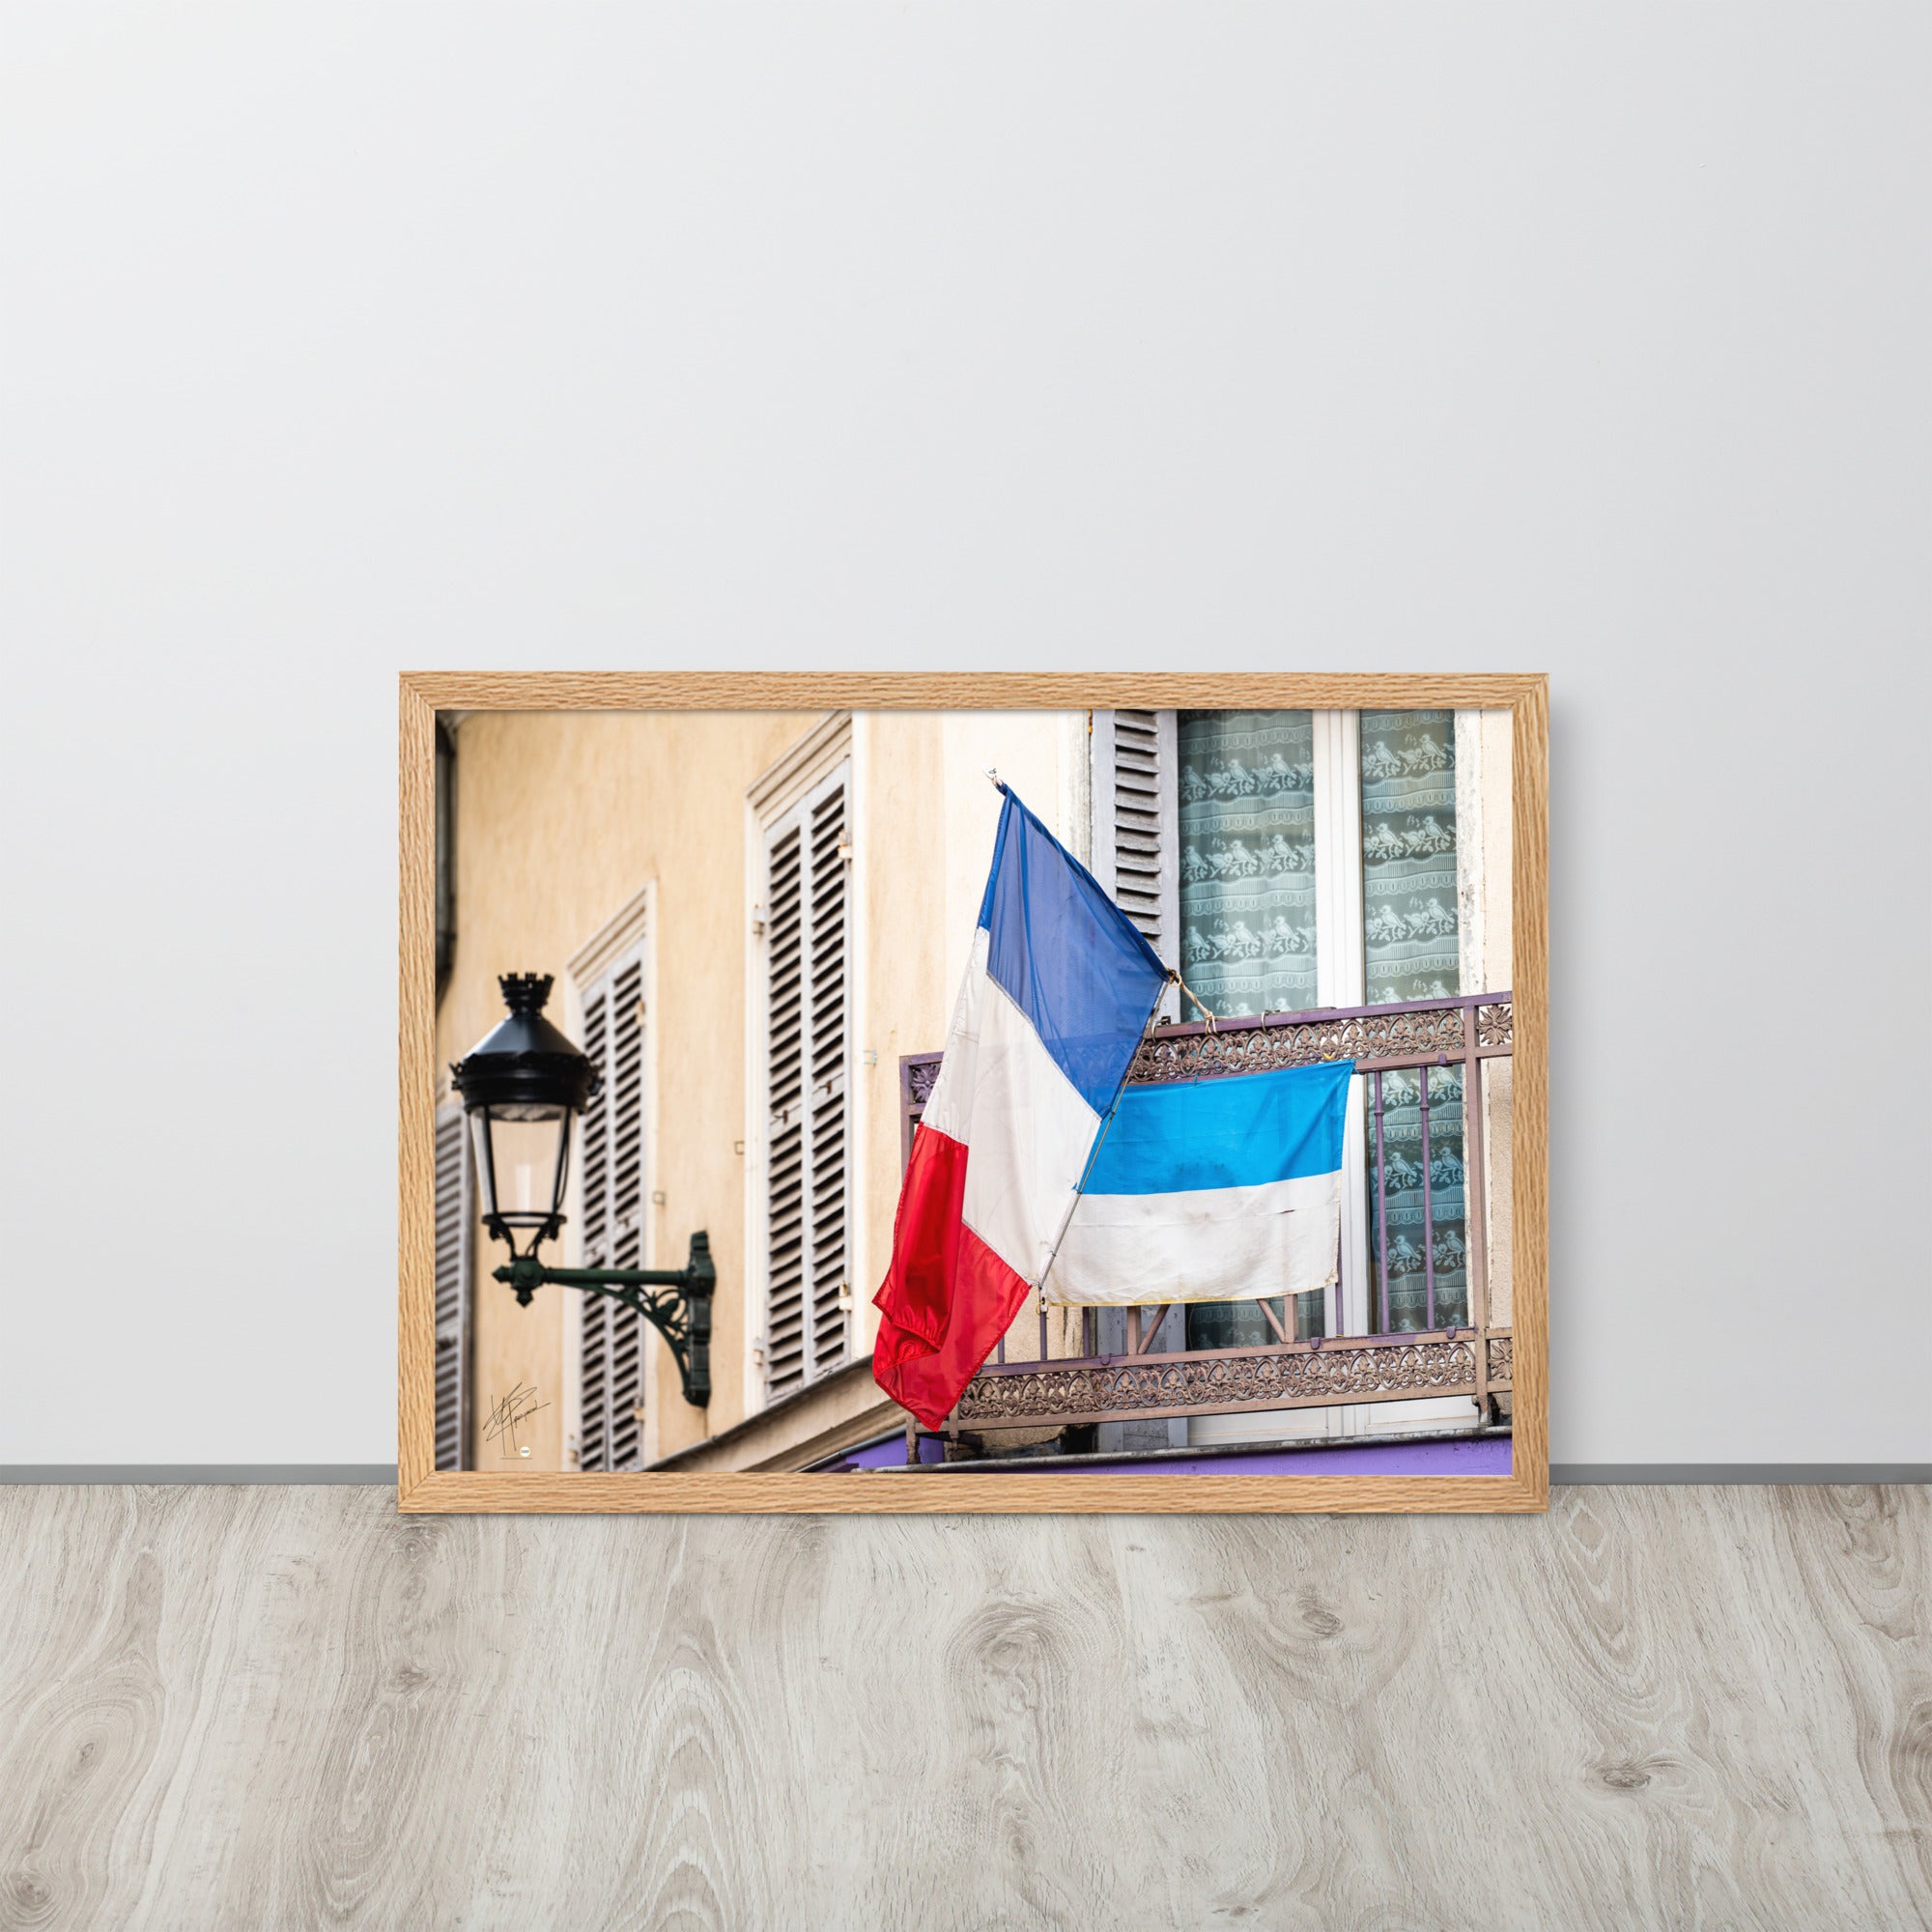 Photographie du drapeau tricolore français suspendu à un garde-corps métallique, représentant à la fois la tradition et la modernité, encadrée pour une mise en valeur murale.